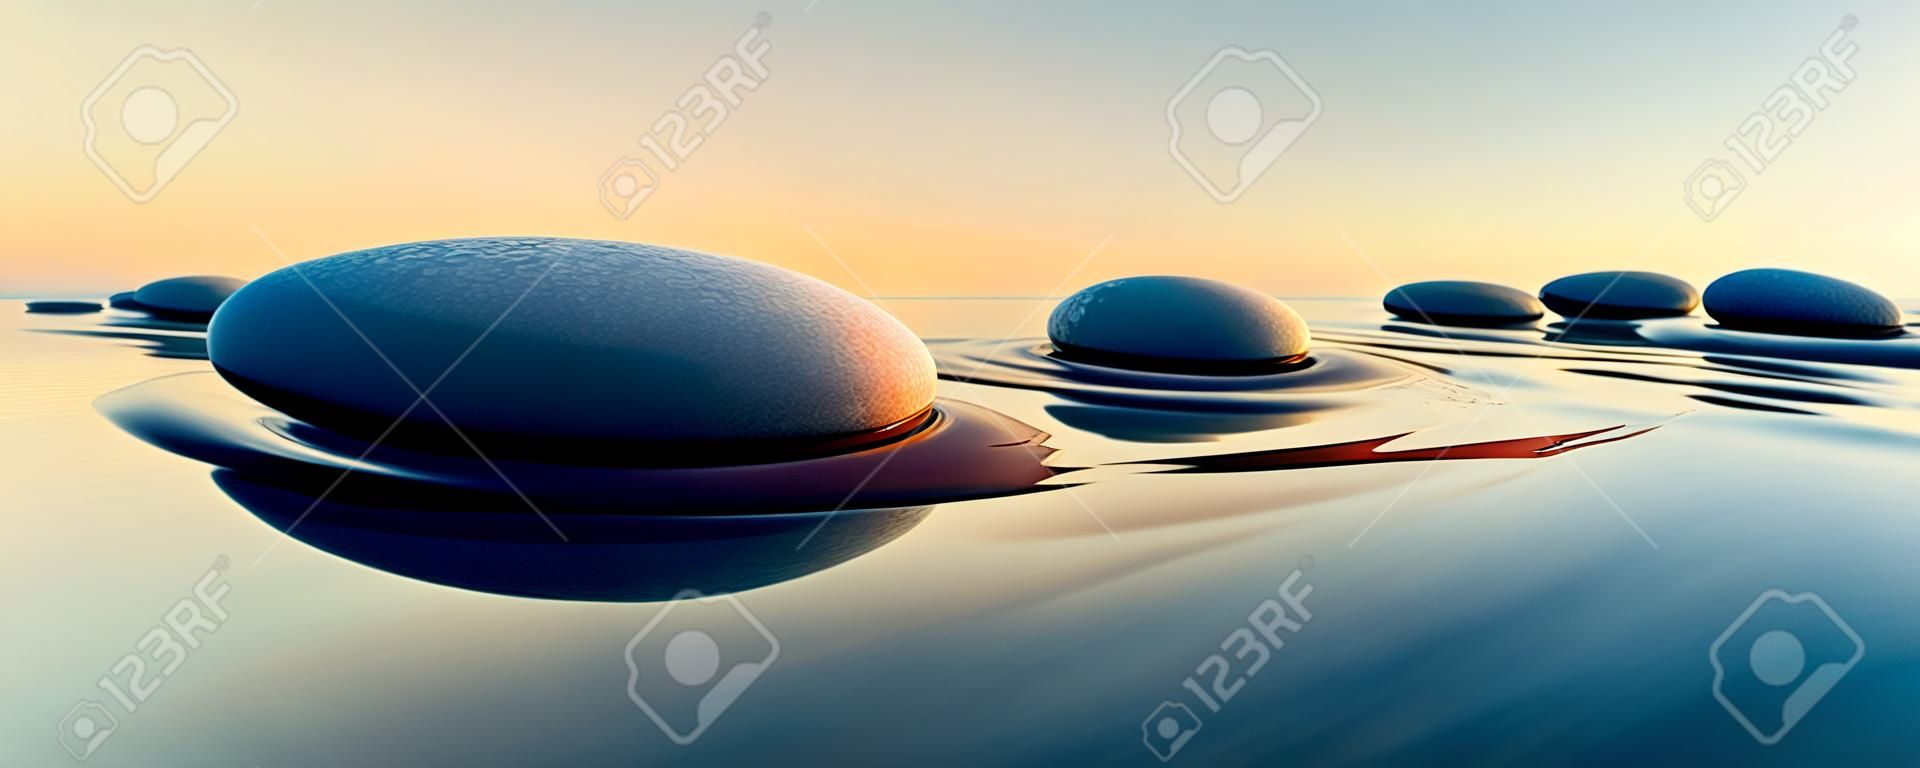 Linha de pedras em água calma no amplo conceito oceânico de meditação - ilustração 3D